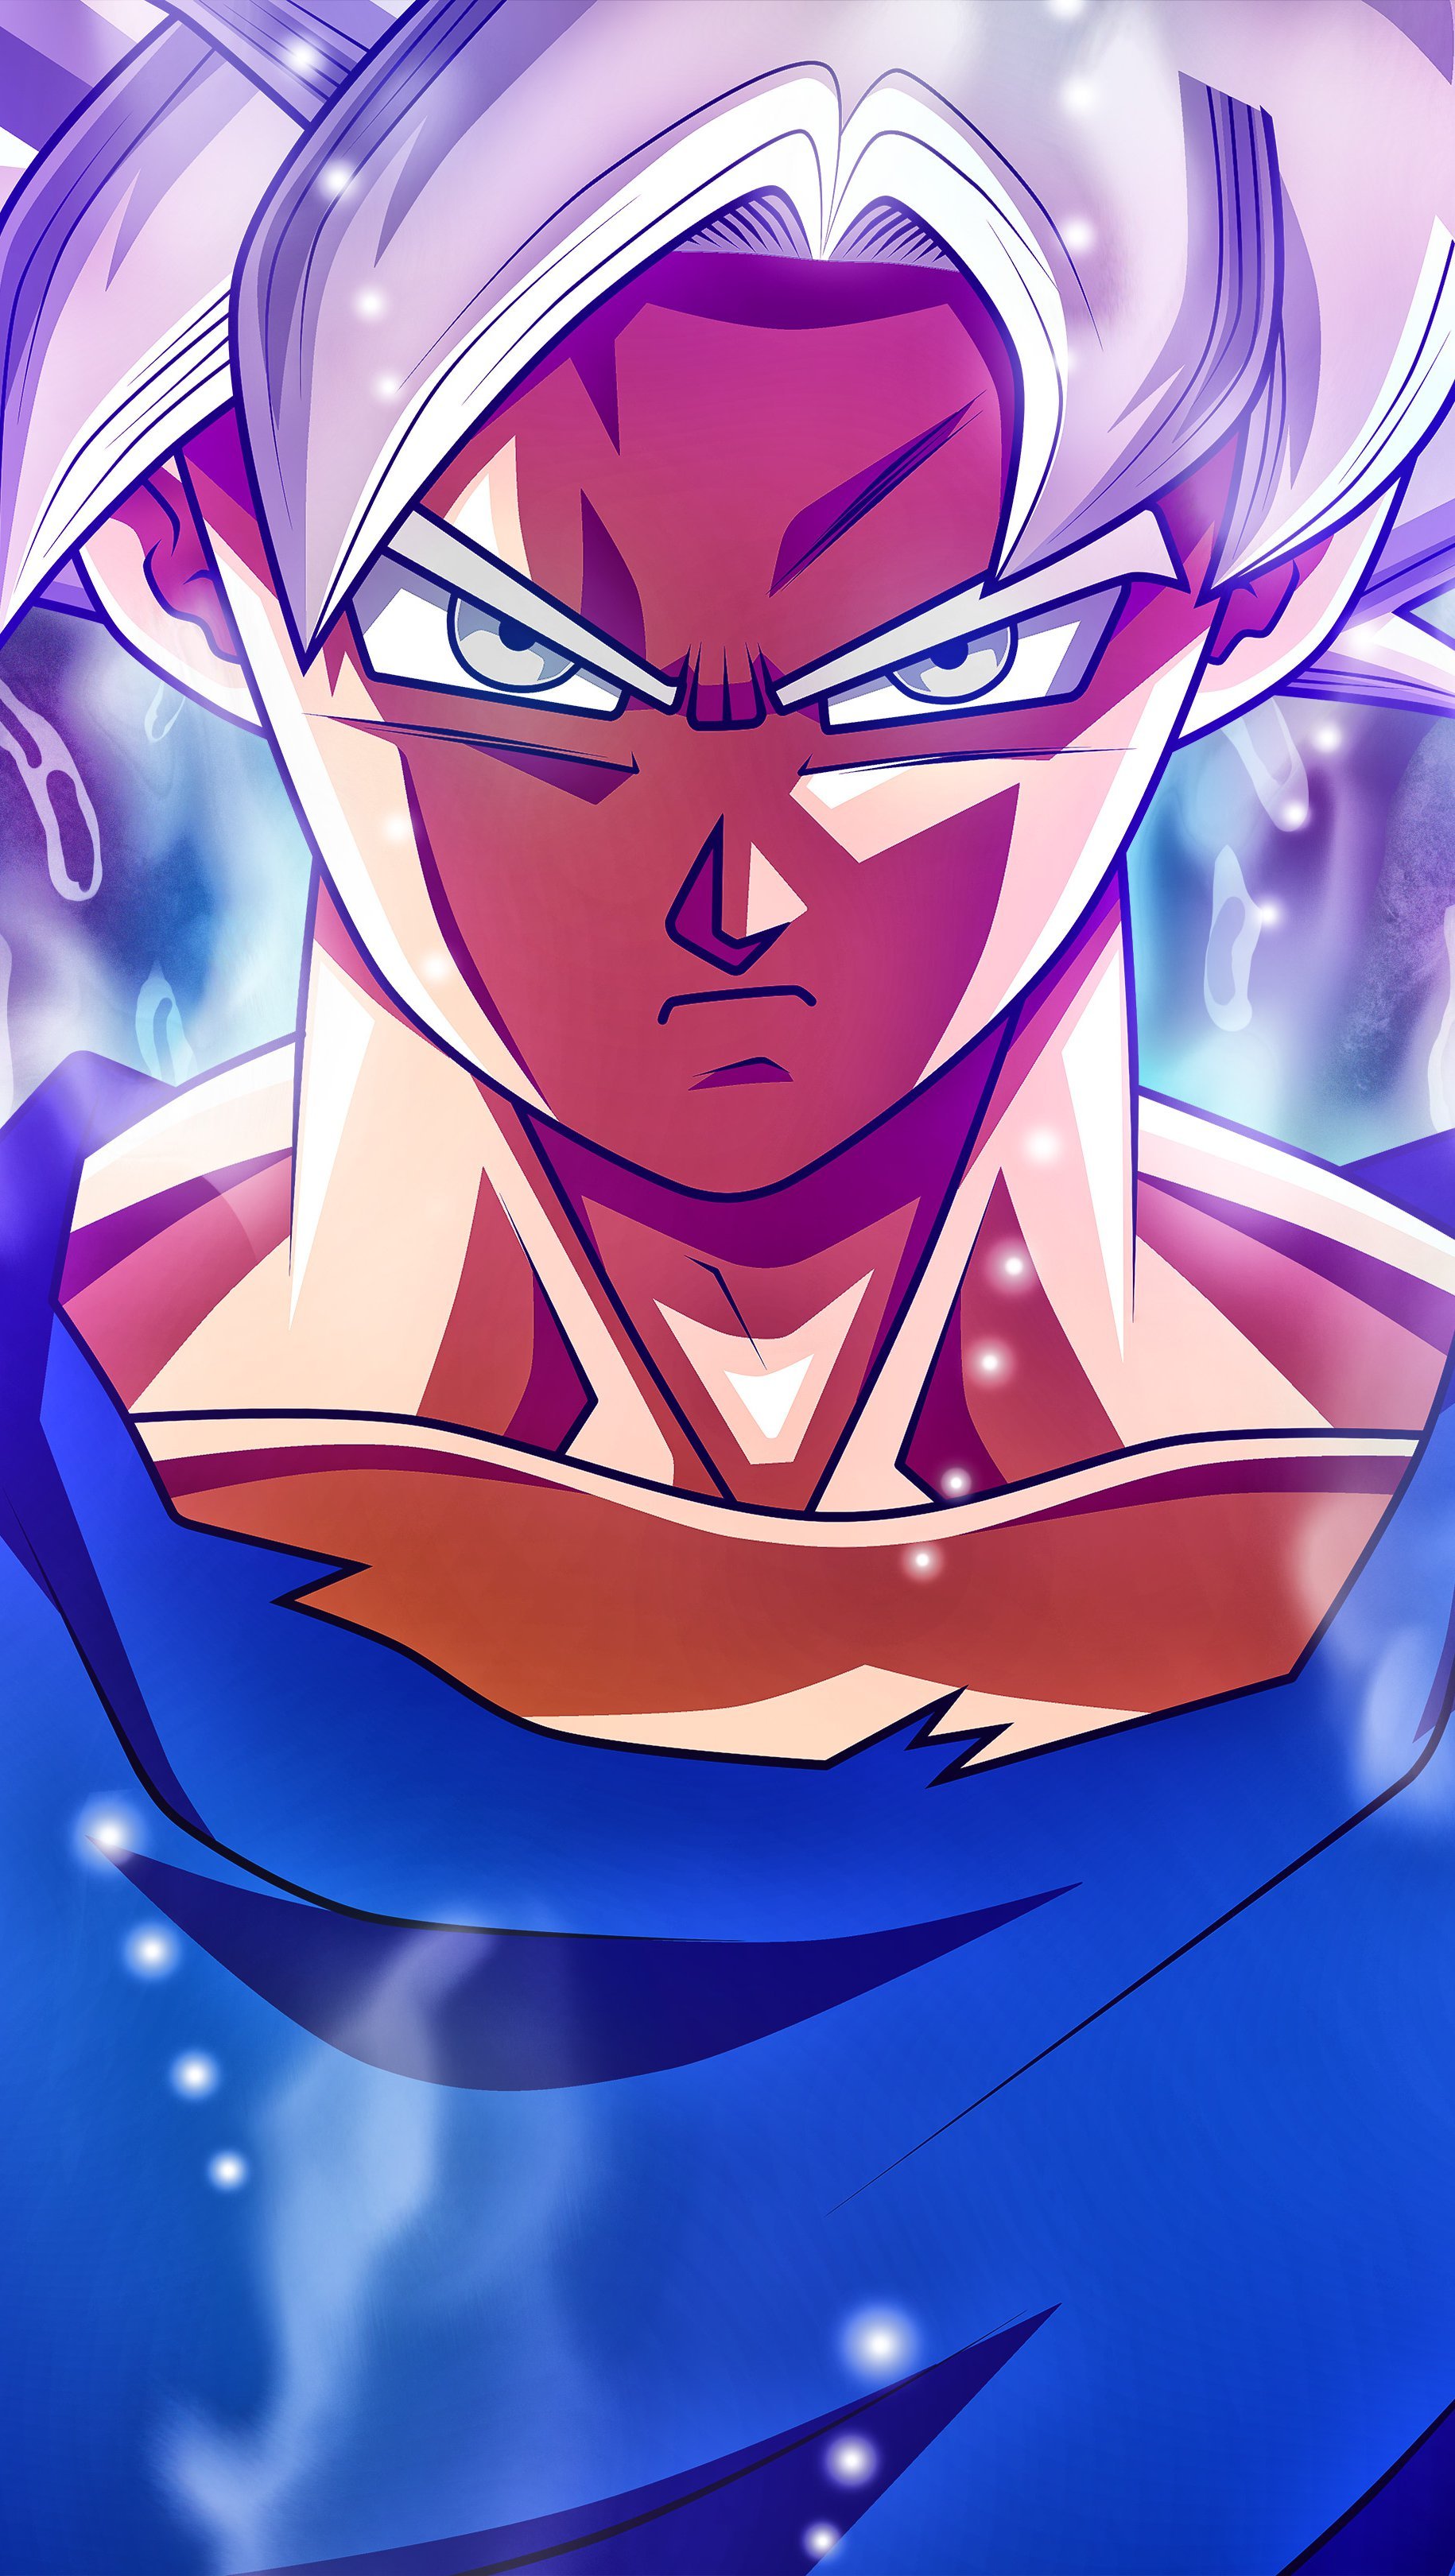 Fondos de pantalla Anime Goku Super Saiyan Silver Mastered Ultra Instinct Dragon Ball Super Vertical